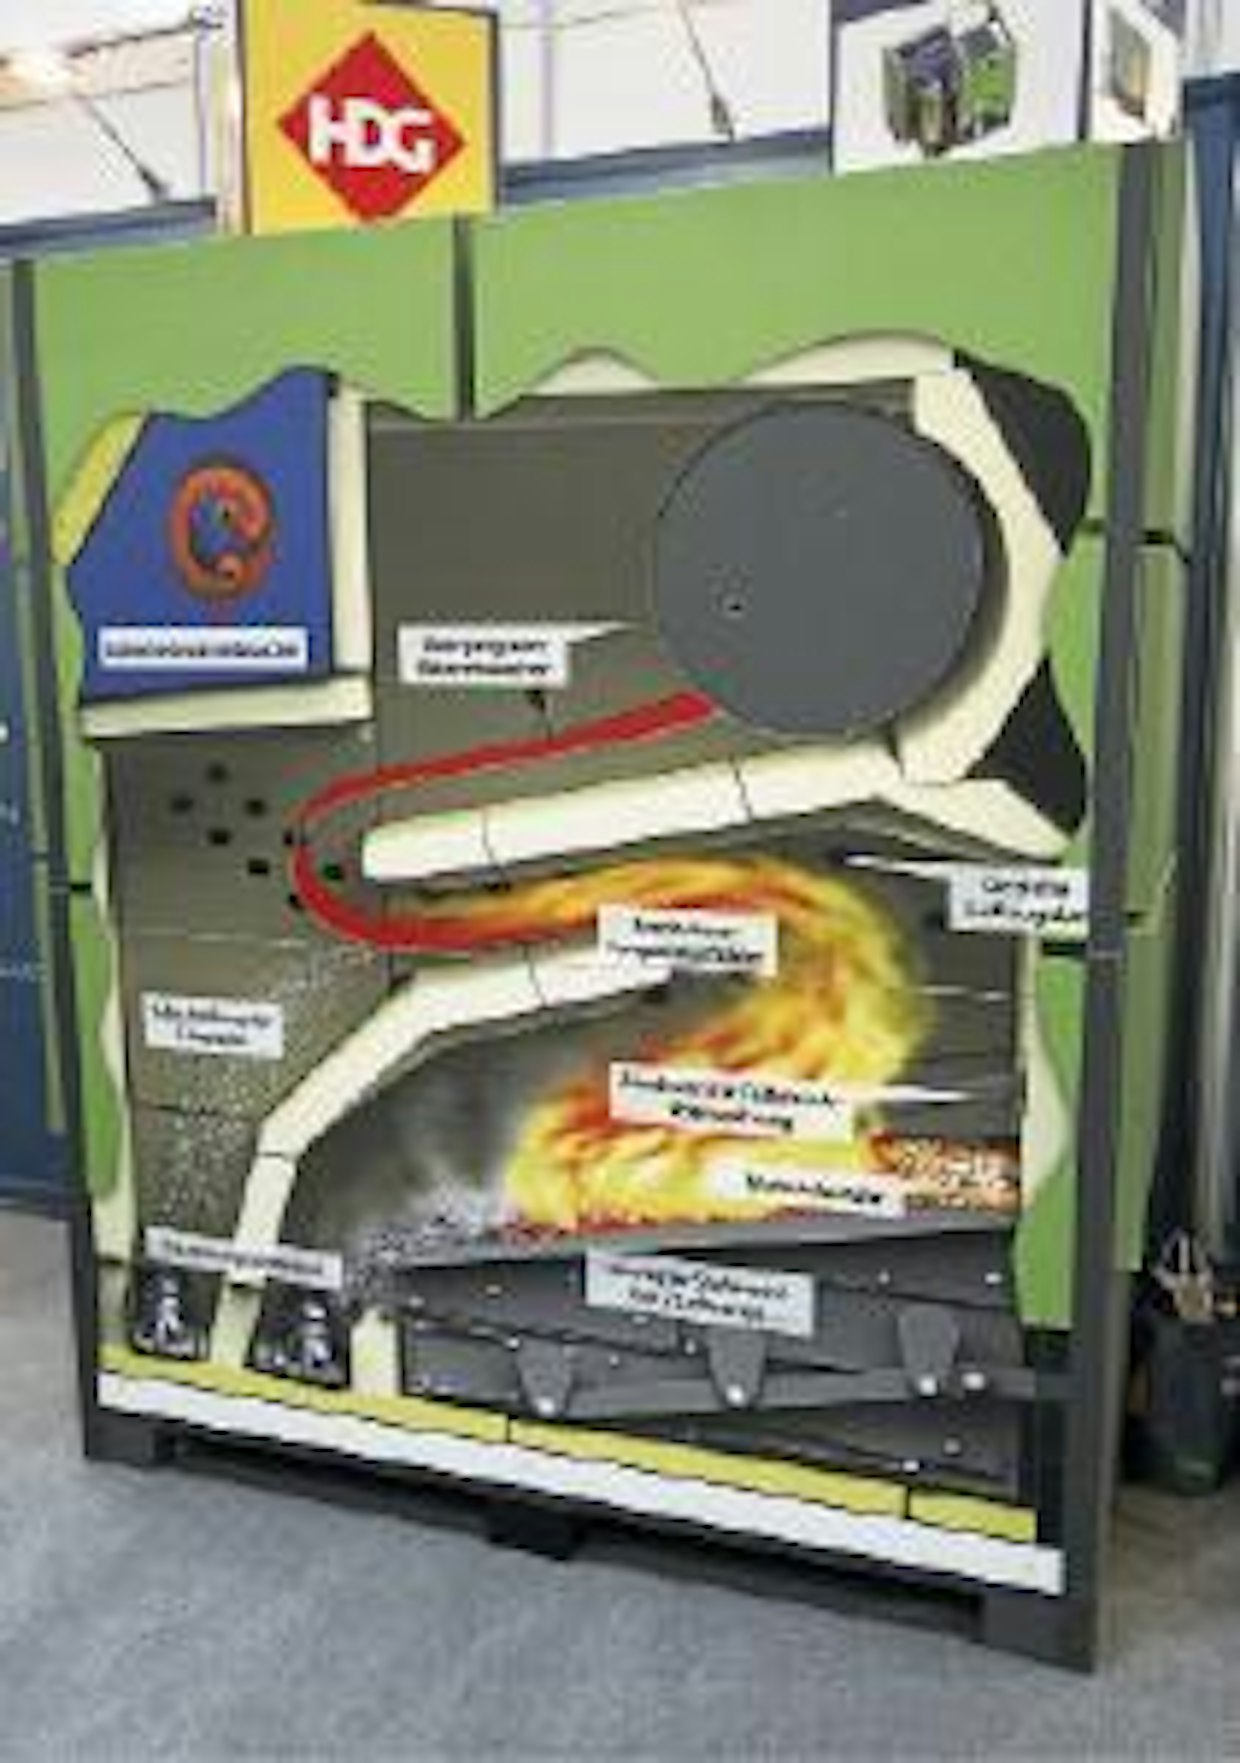 Baijerilaisvalmistaja HDG-Bavaria GmbH esitteli havainnollisesti M300-lämmityslaitteistoaan. Polttoaine – hake tai pelletti – poltetaan porrasarinalla, ja lämpö otetaan talteen laajalla lämmönvaihdinosalla, joka jää tulipesän taakse. Tuhkanpoisto ja palokanavien nuohous on luonnollisesti automatisoitu. Kuvan lämmityskattila säätyy tehoalueelle 90–300 kW.